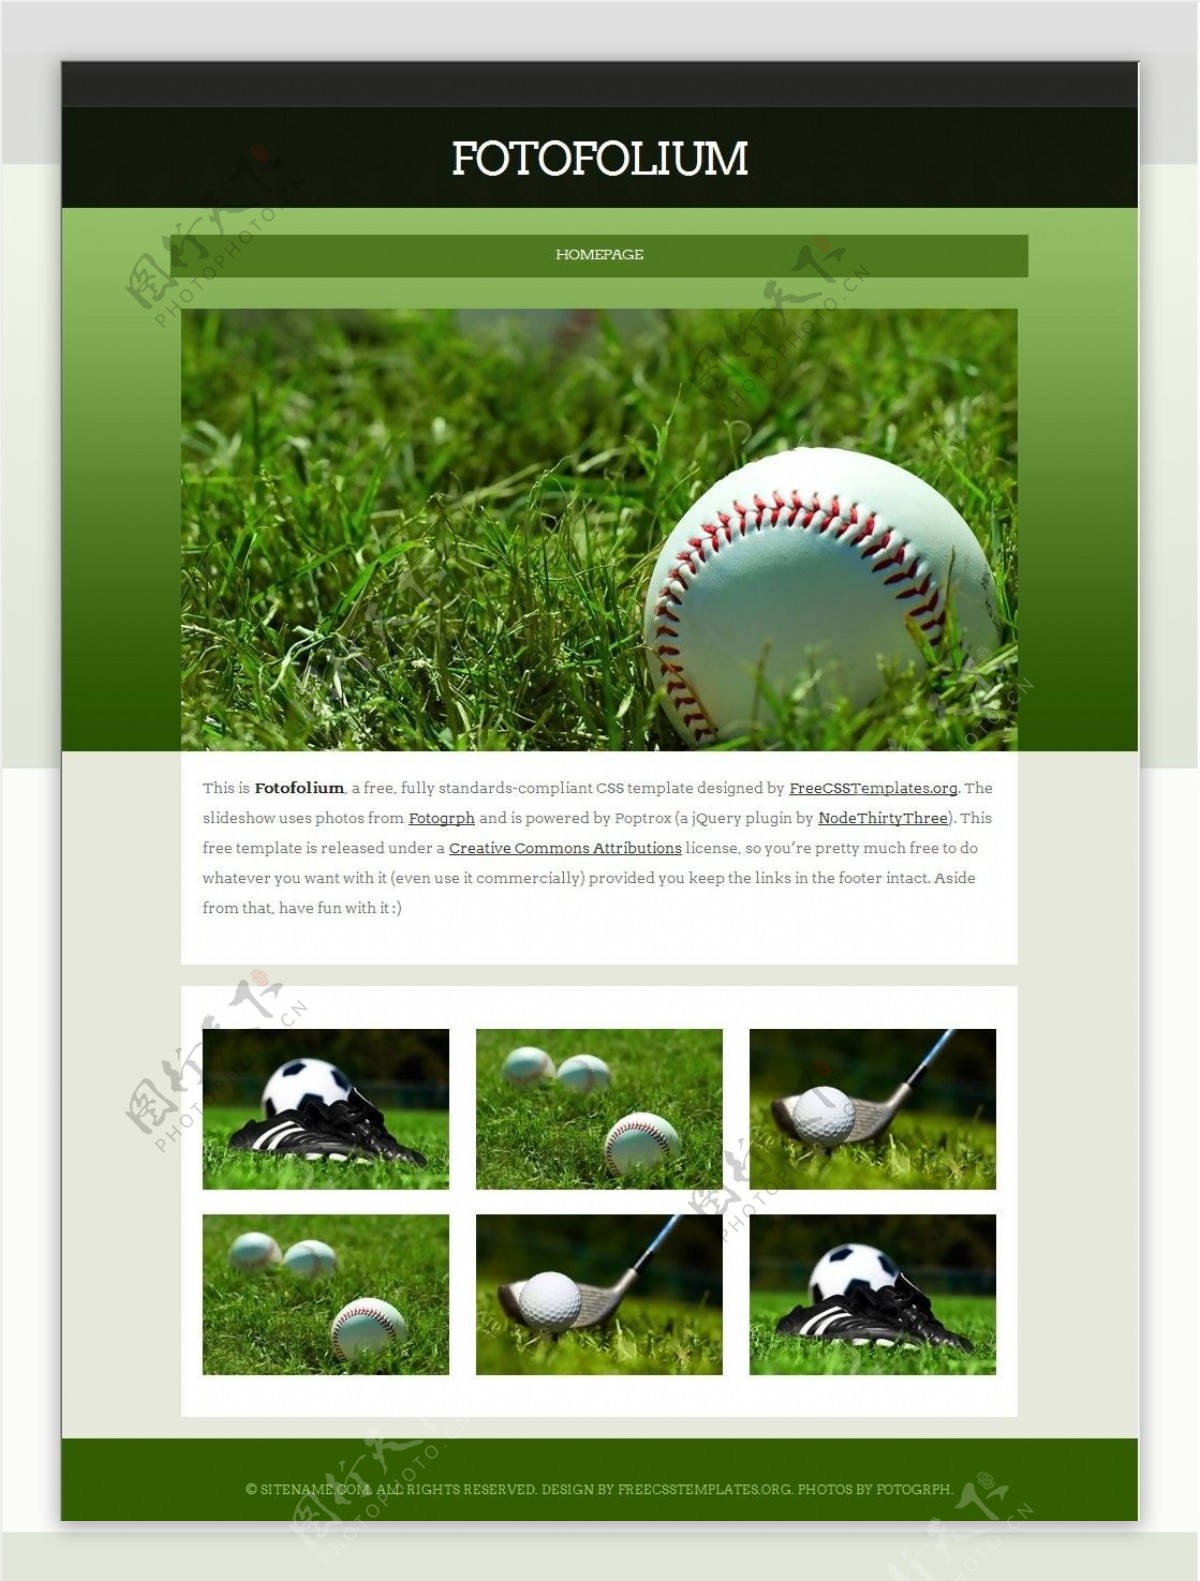 高尔夫绿荫图片信息网站模板